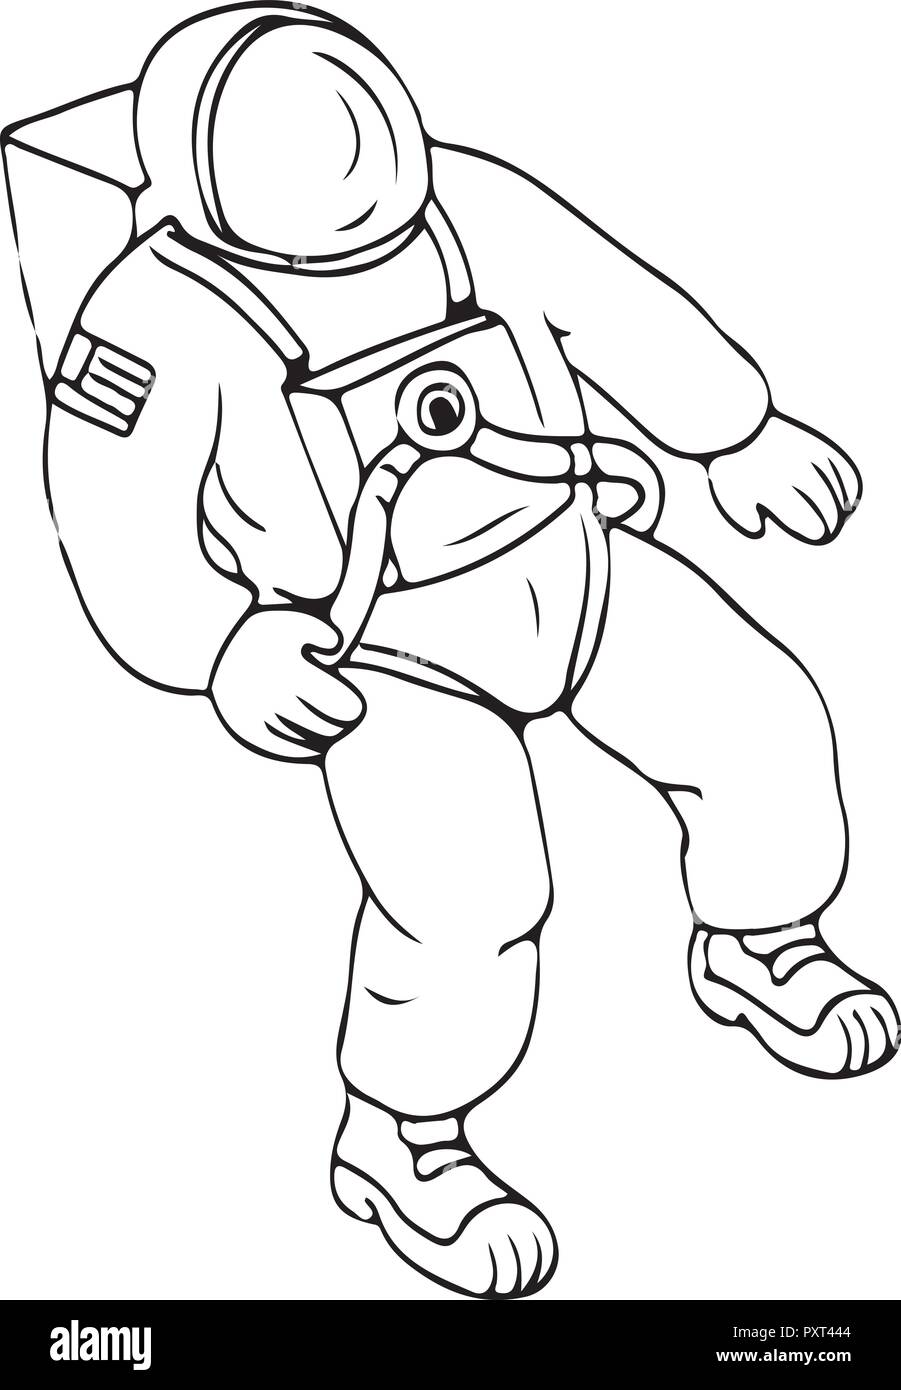 Croquis dessin illustration de style d'un astronaute, cosmonaute ou spaceman flottant dans l'espace isolé sur fond blanc. Illustration de Vecteur